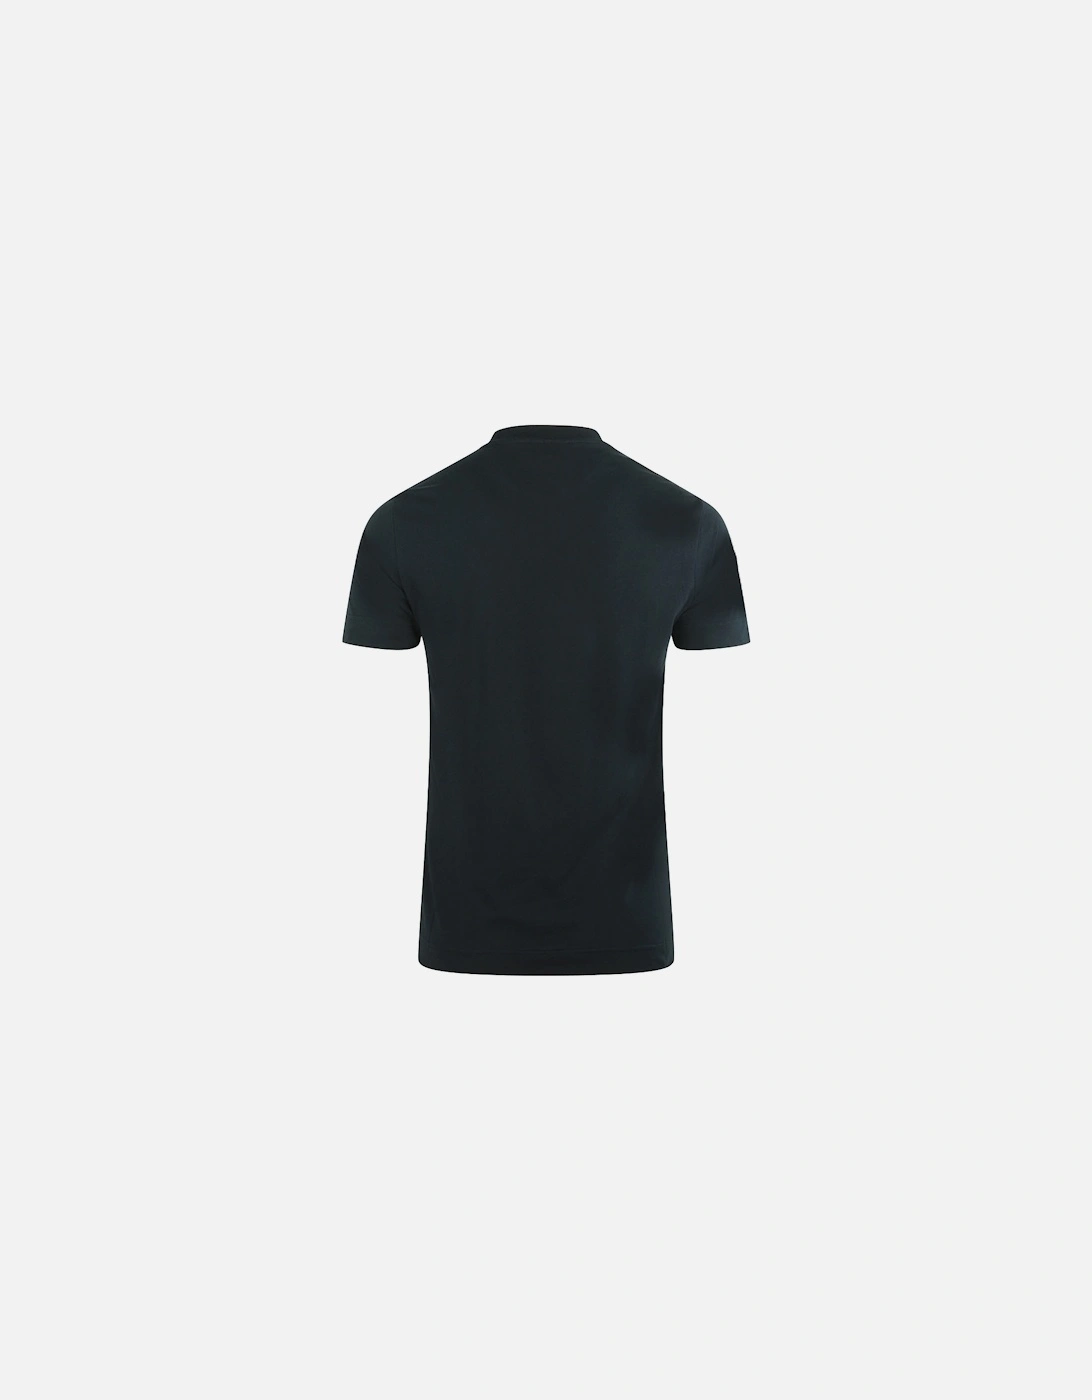 EA Italian Flag Logo Black T-Shirt